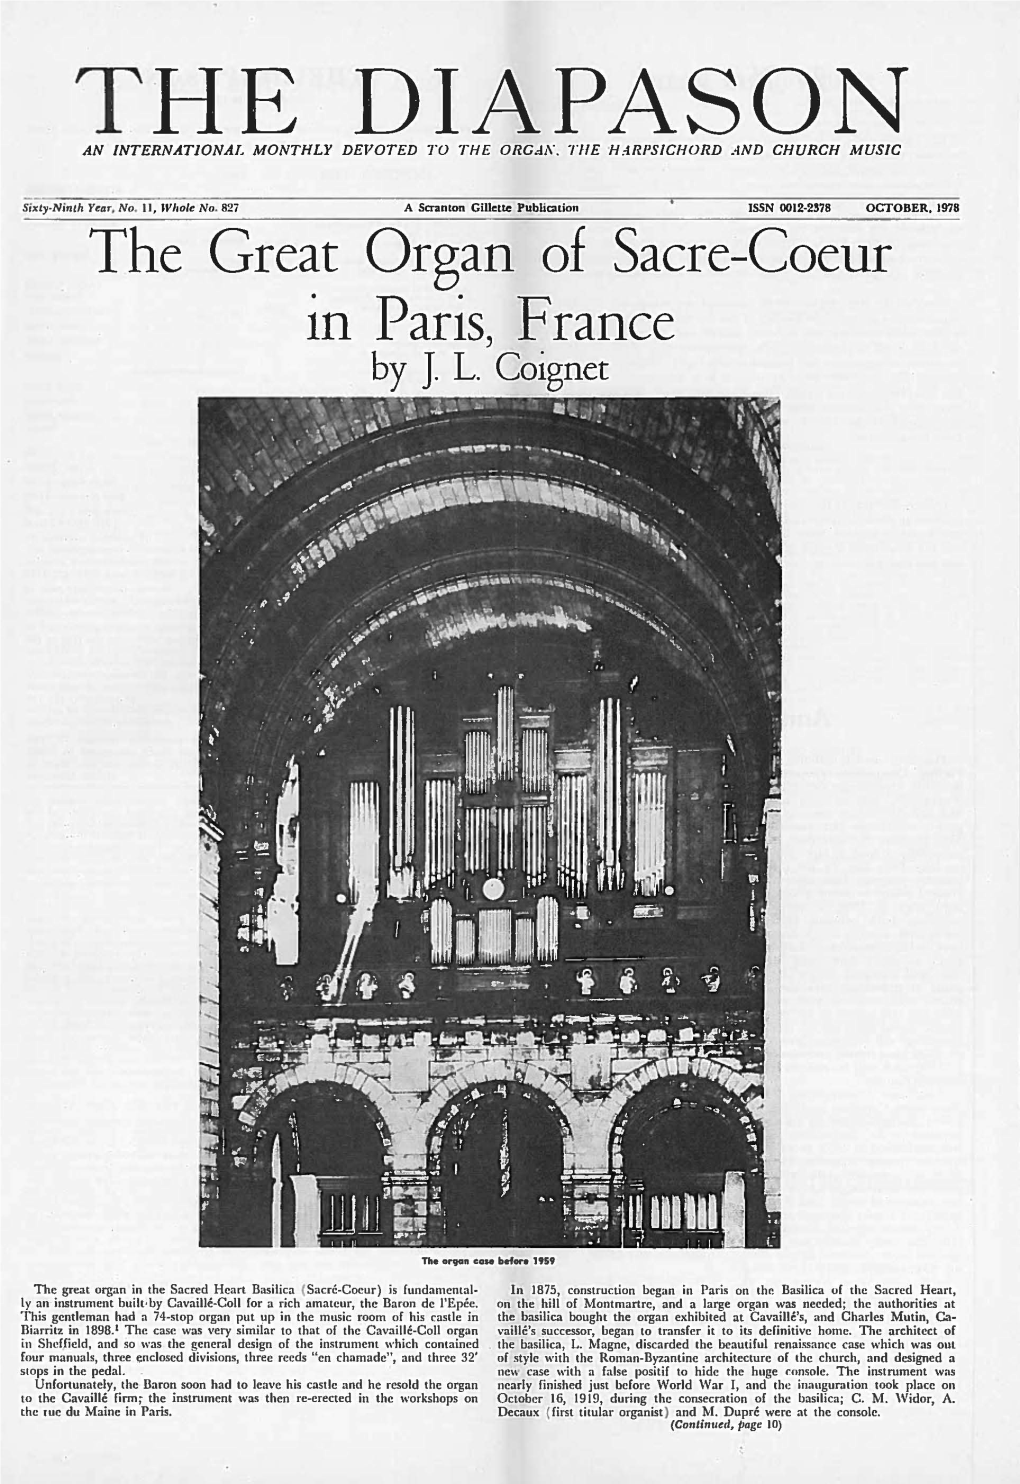 Organ of Saere-Coeur in Paris, F Ranee by J